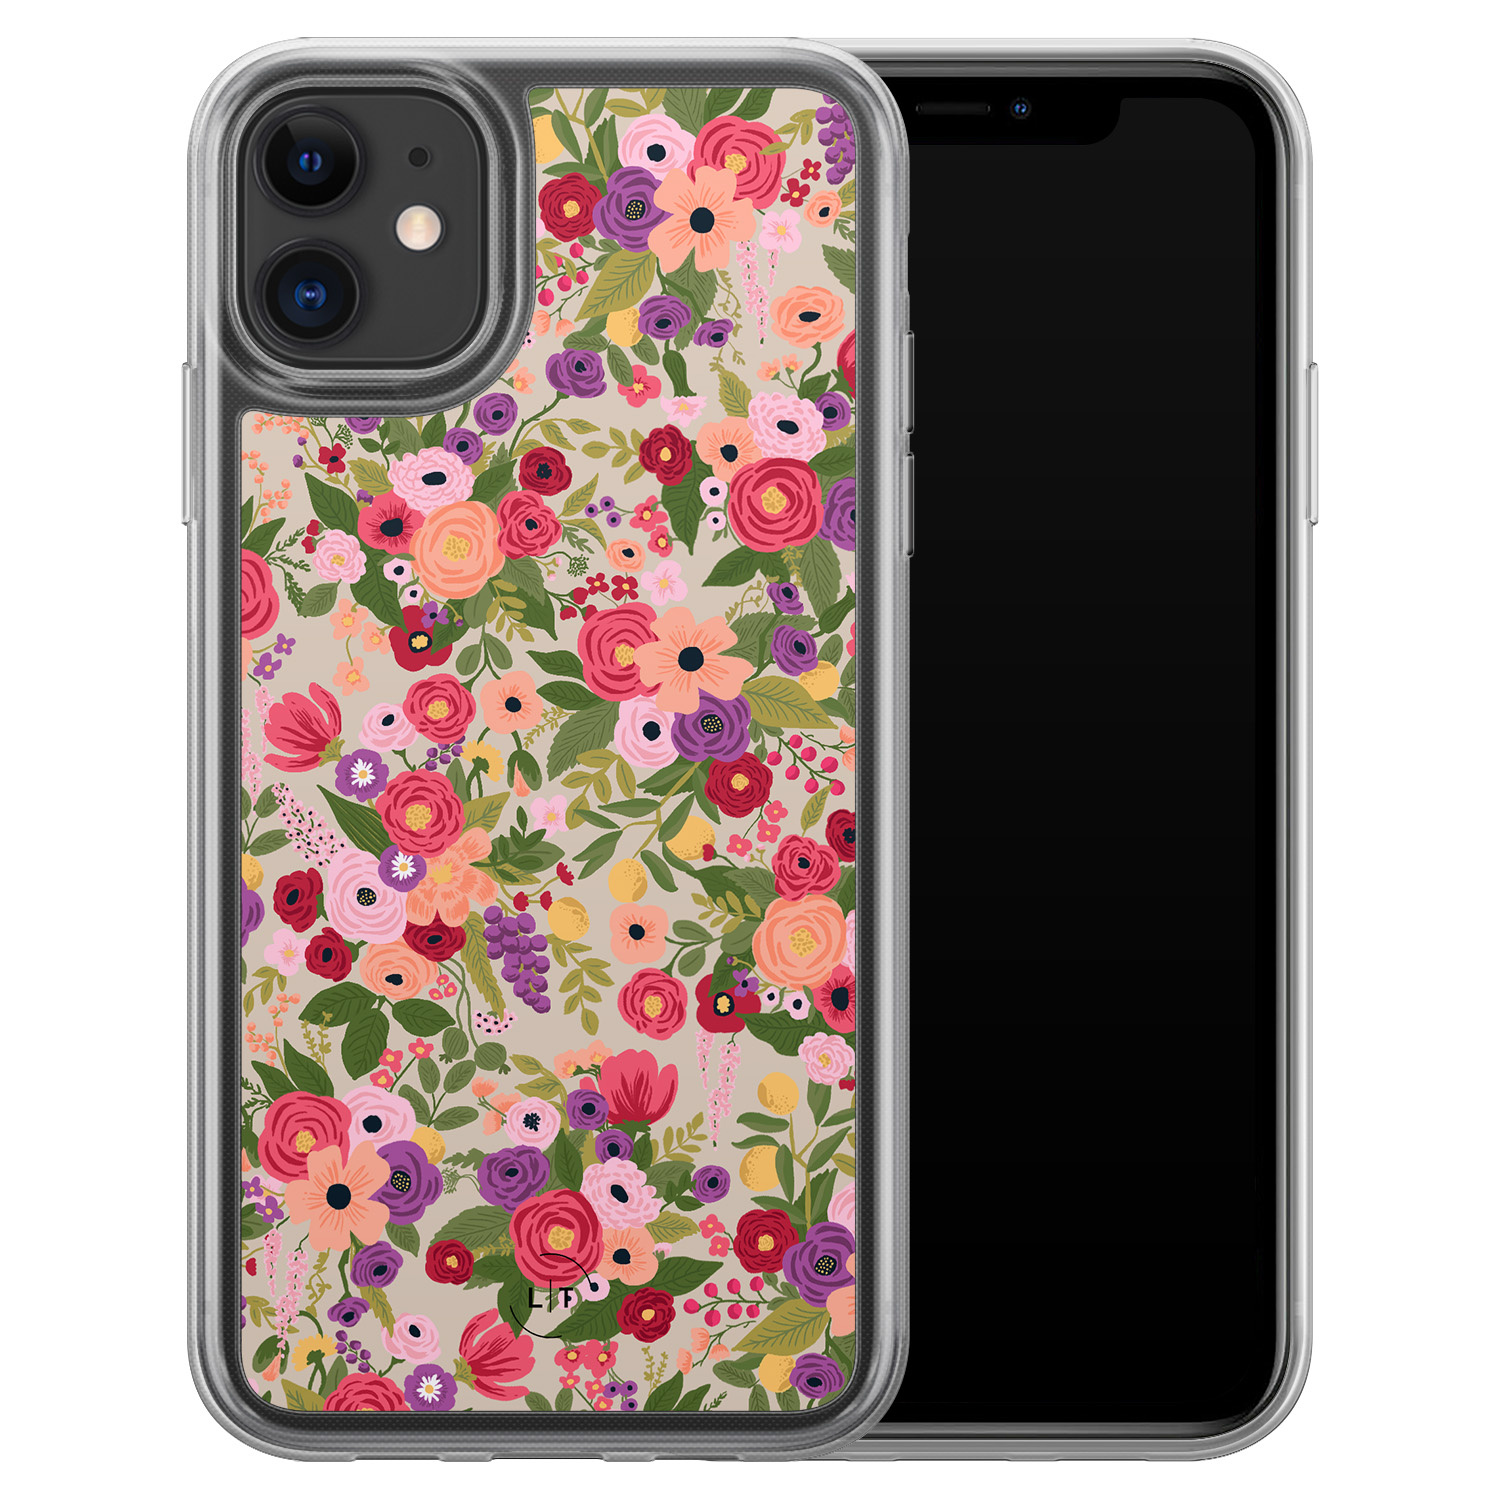 Leuke Telefoonhoesjes iPhone 11 hybride hoesje - Floral garden